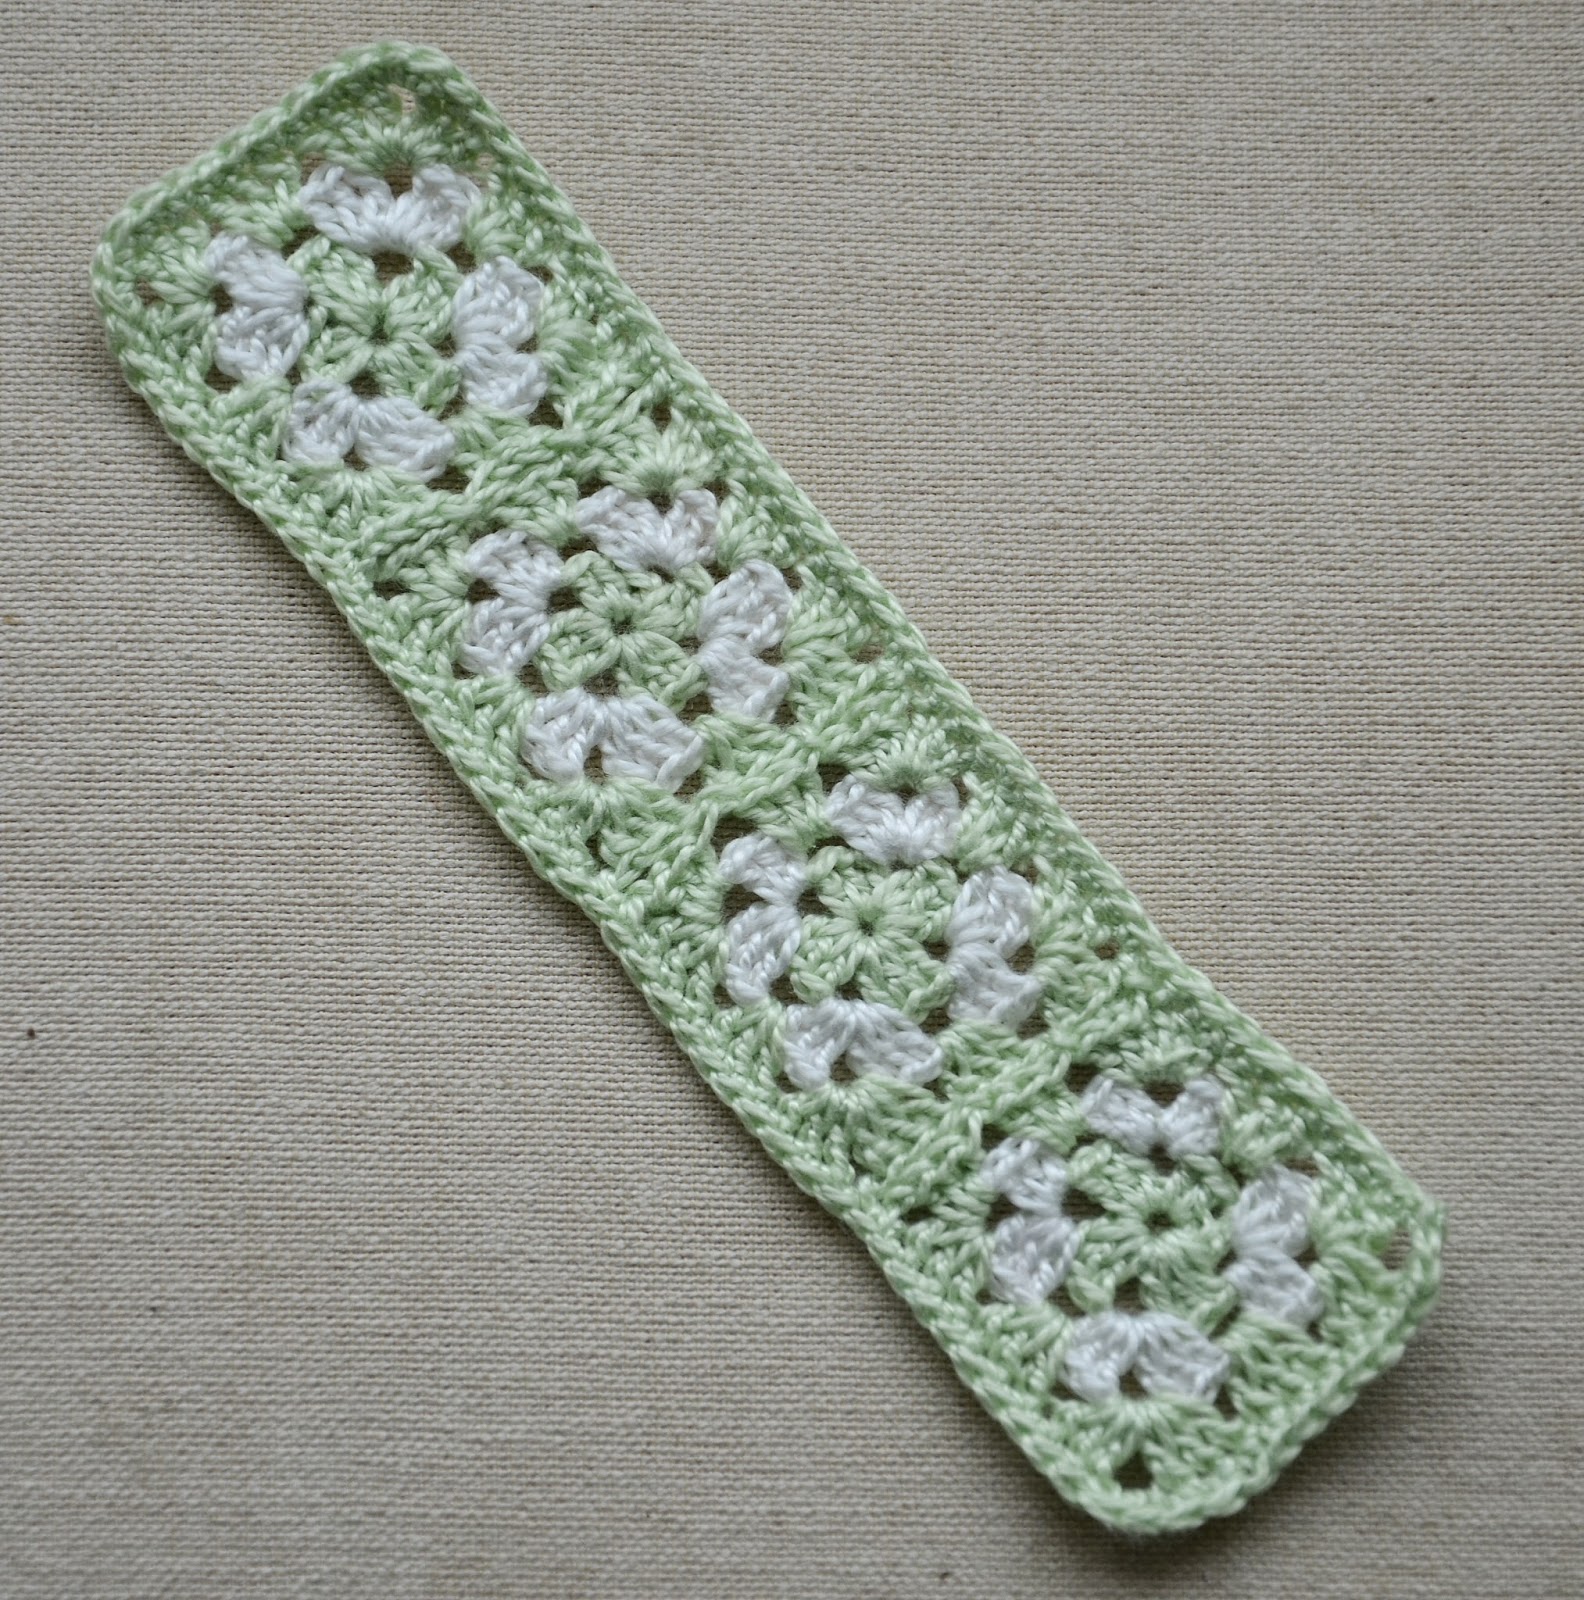 Granny Square Bookmark - Free Crochet Pattern